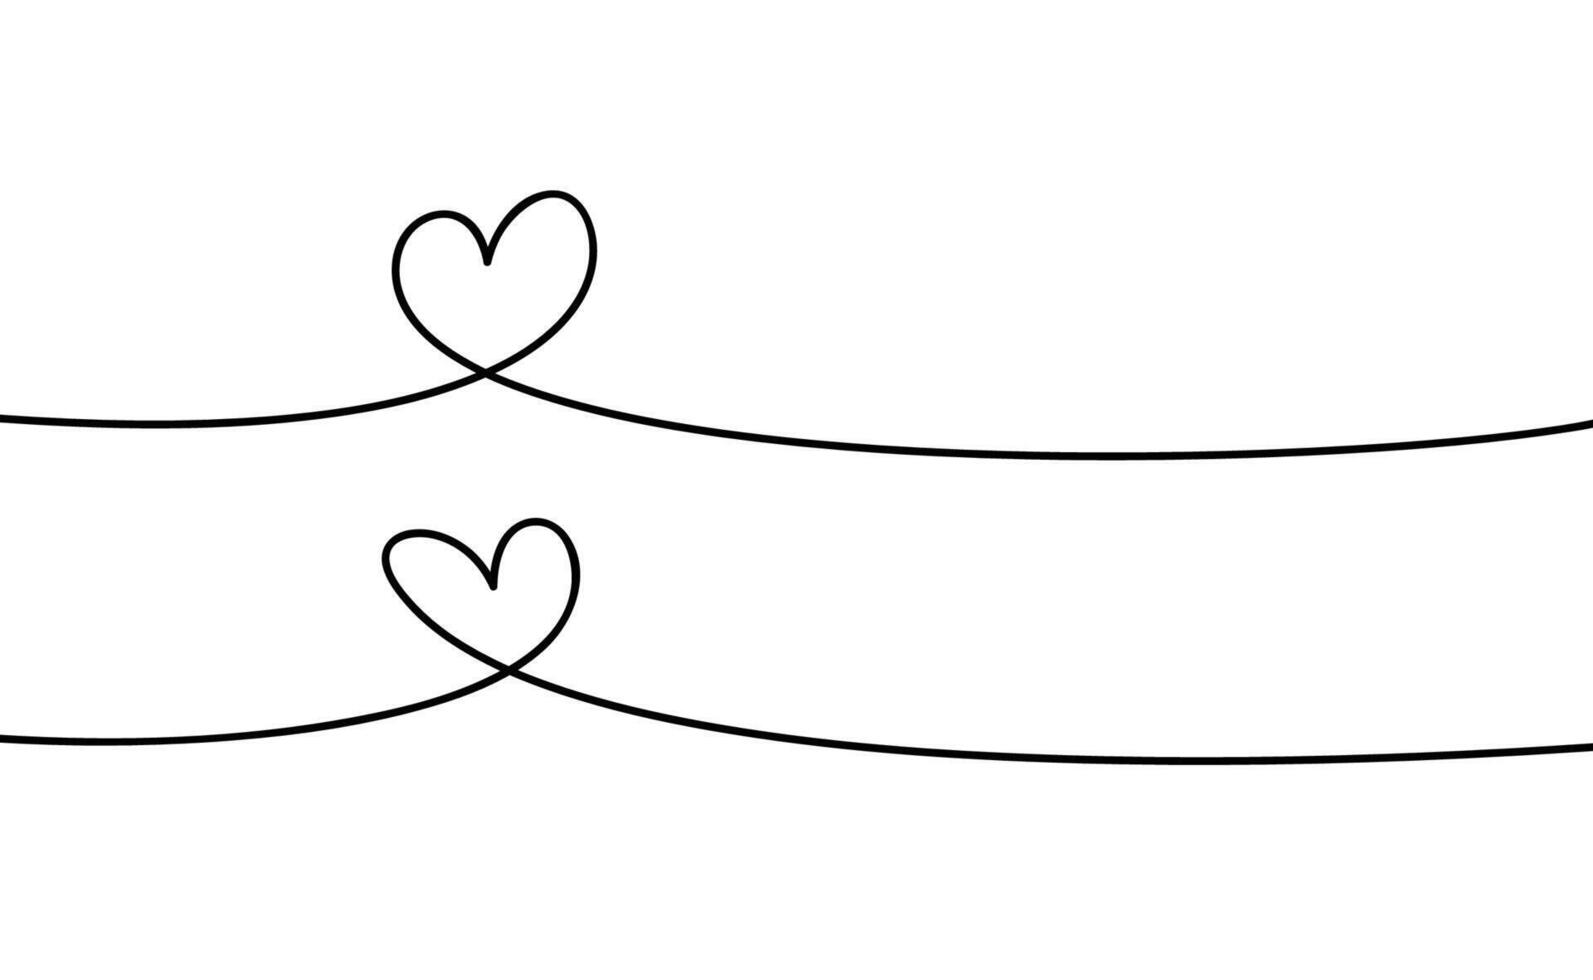 cuore forma. continuo lineare arte scarabocchio disegno vettore illustrazione. amore uno linea simbolo.